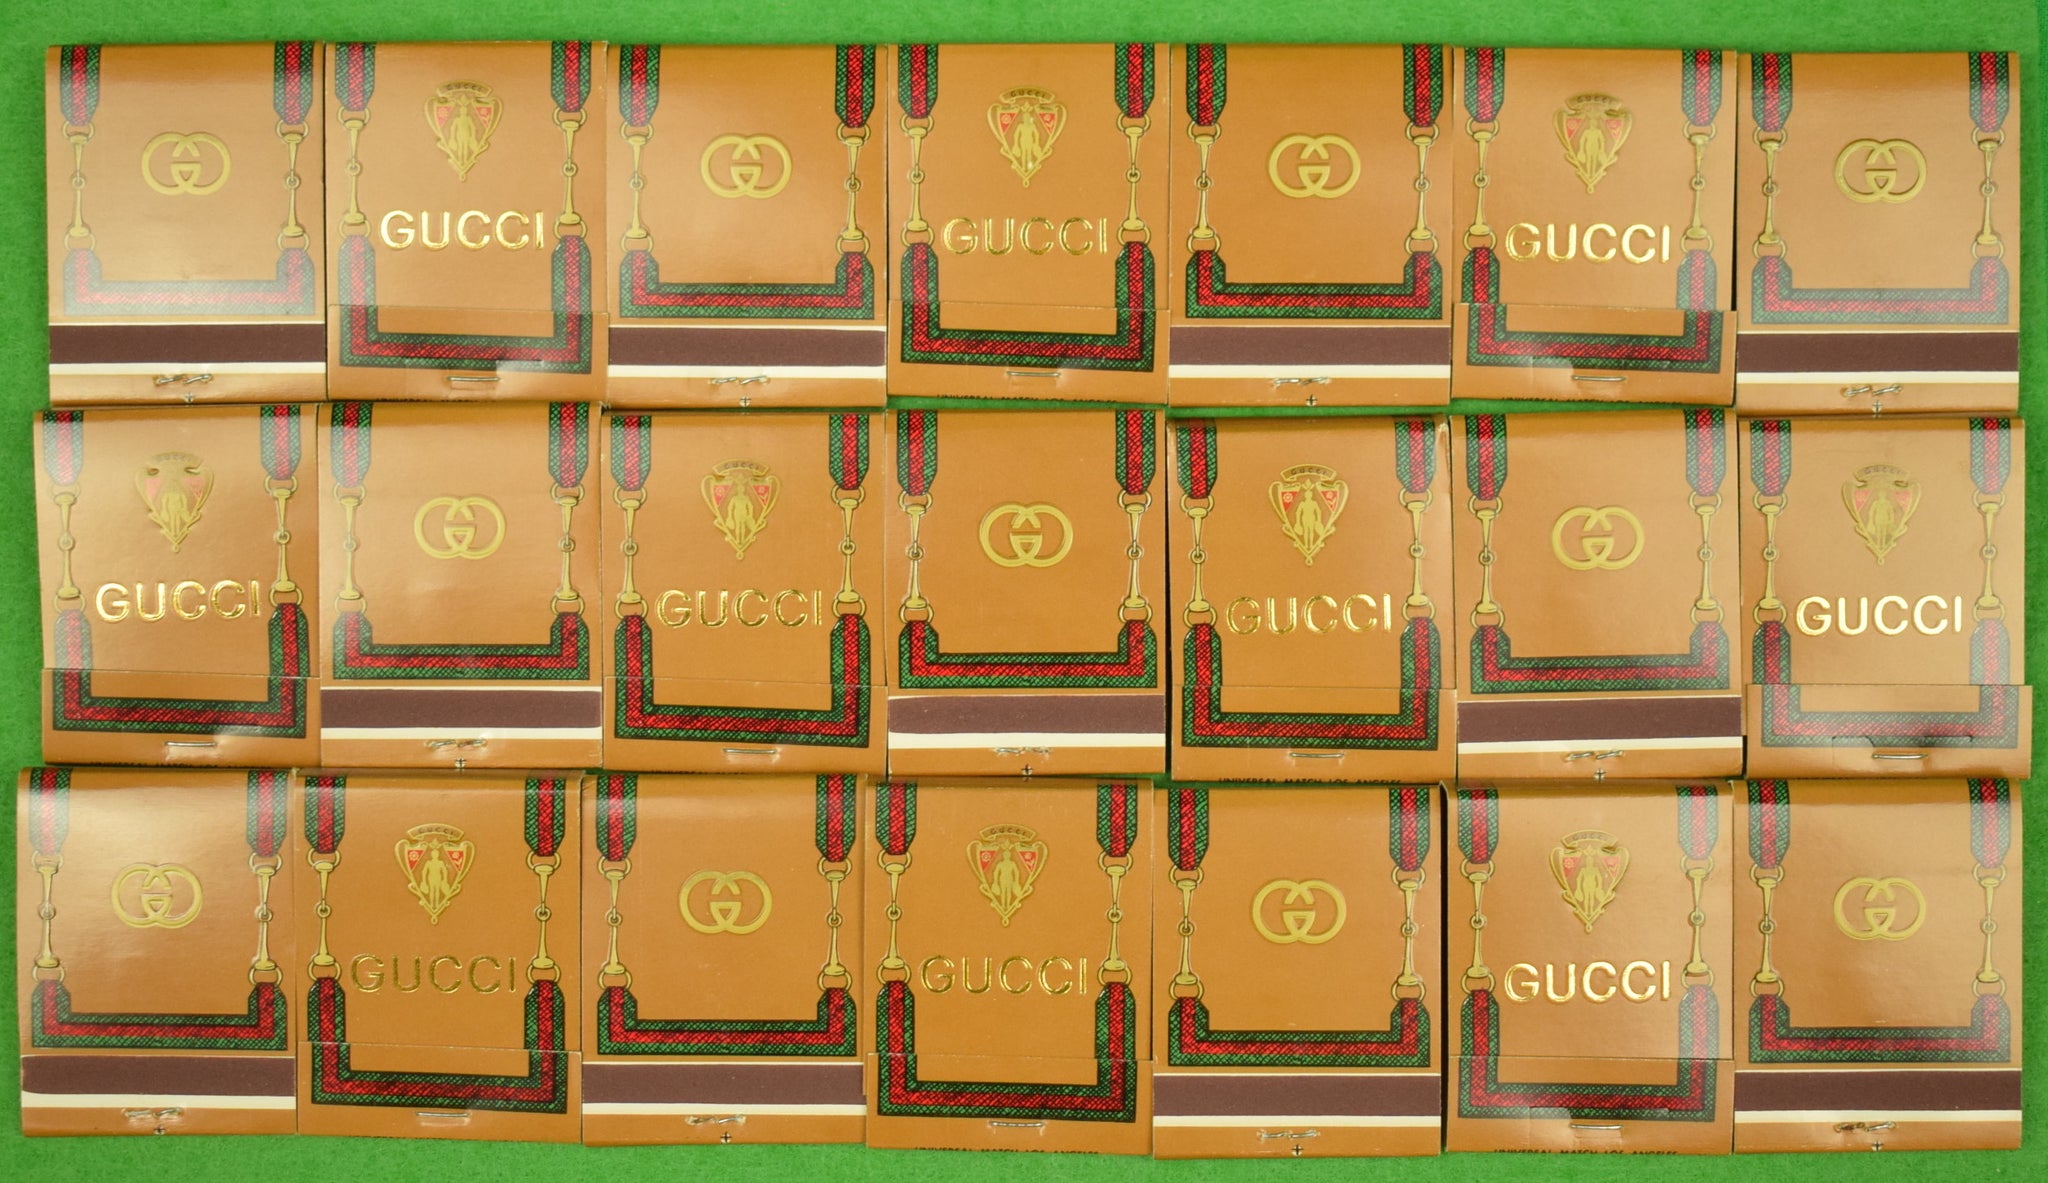 Vintage Gucci Cigarette Case